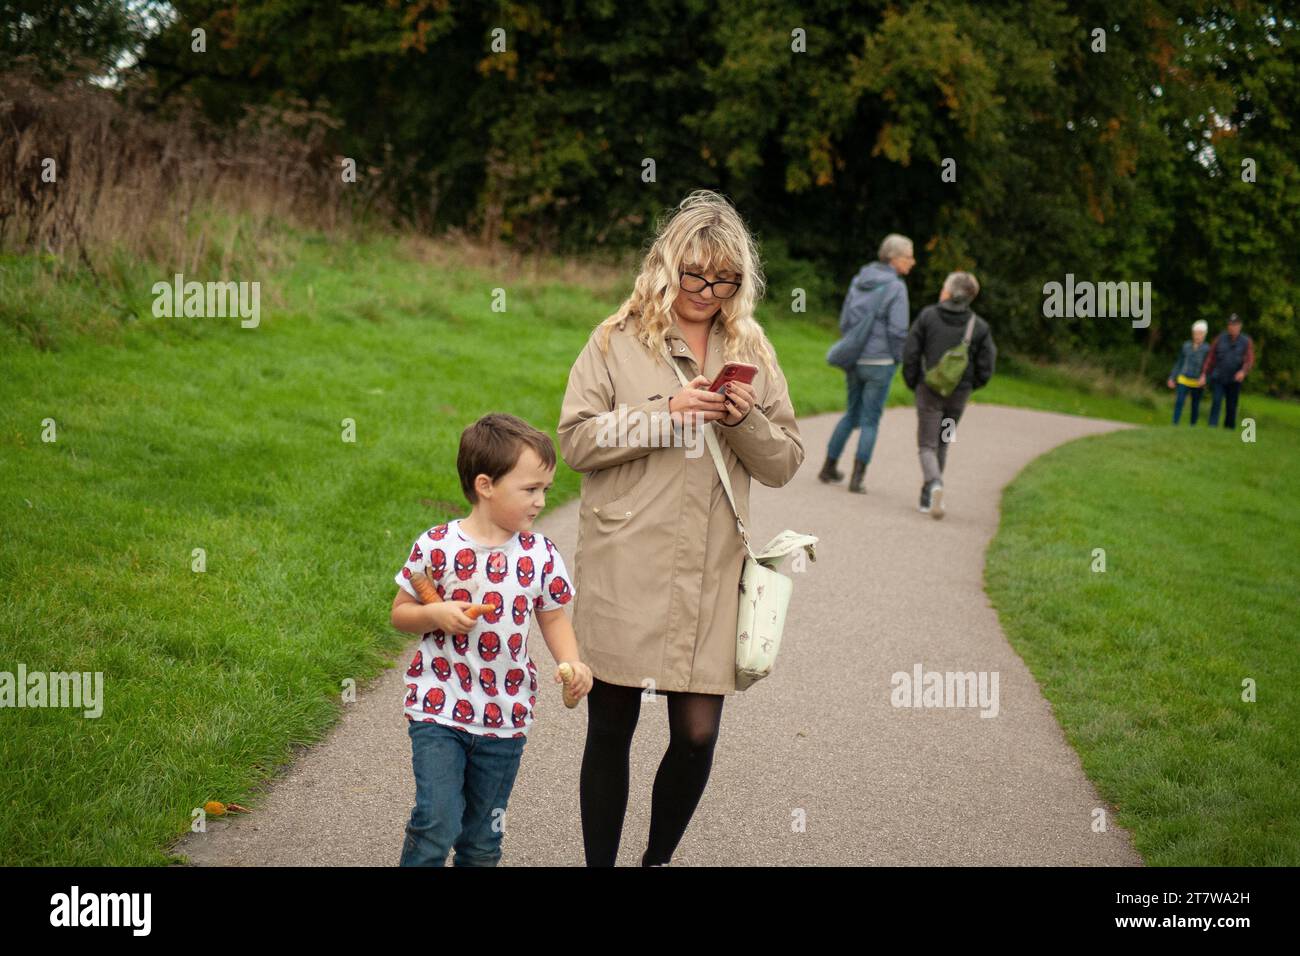 Eine junge Mutter schlendert mit ihrem Kleinen durch einen Park und navigiert durch die Schönheit des Parks, während sie versucht, ihr Handy zu benutzen. Moderne Erziehung Stockfoto